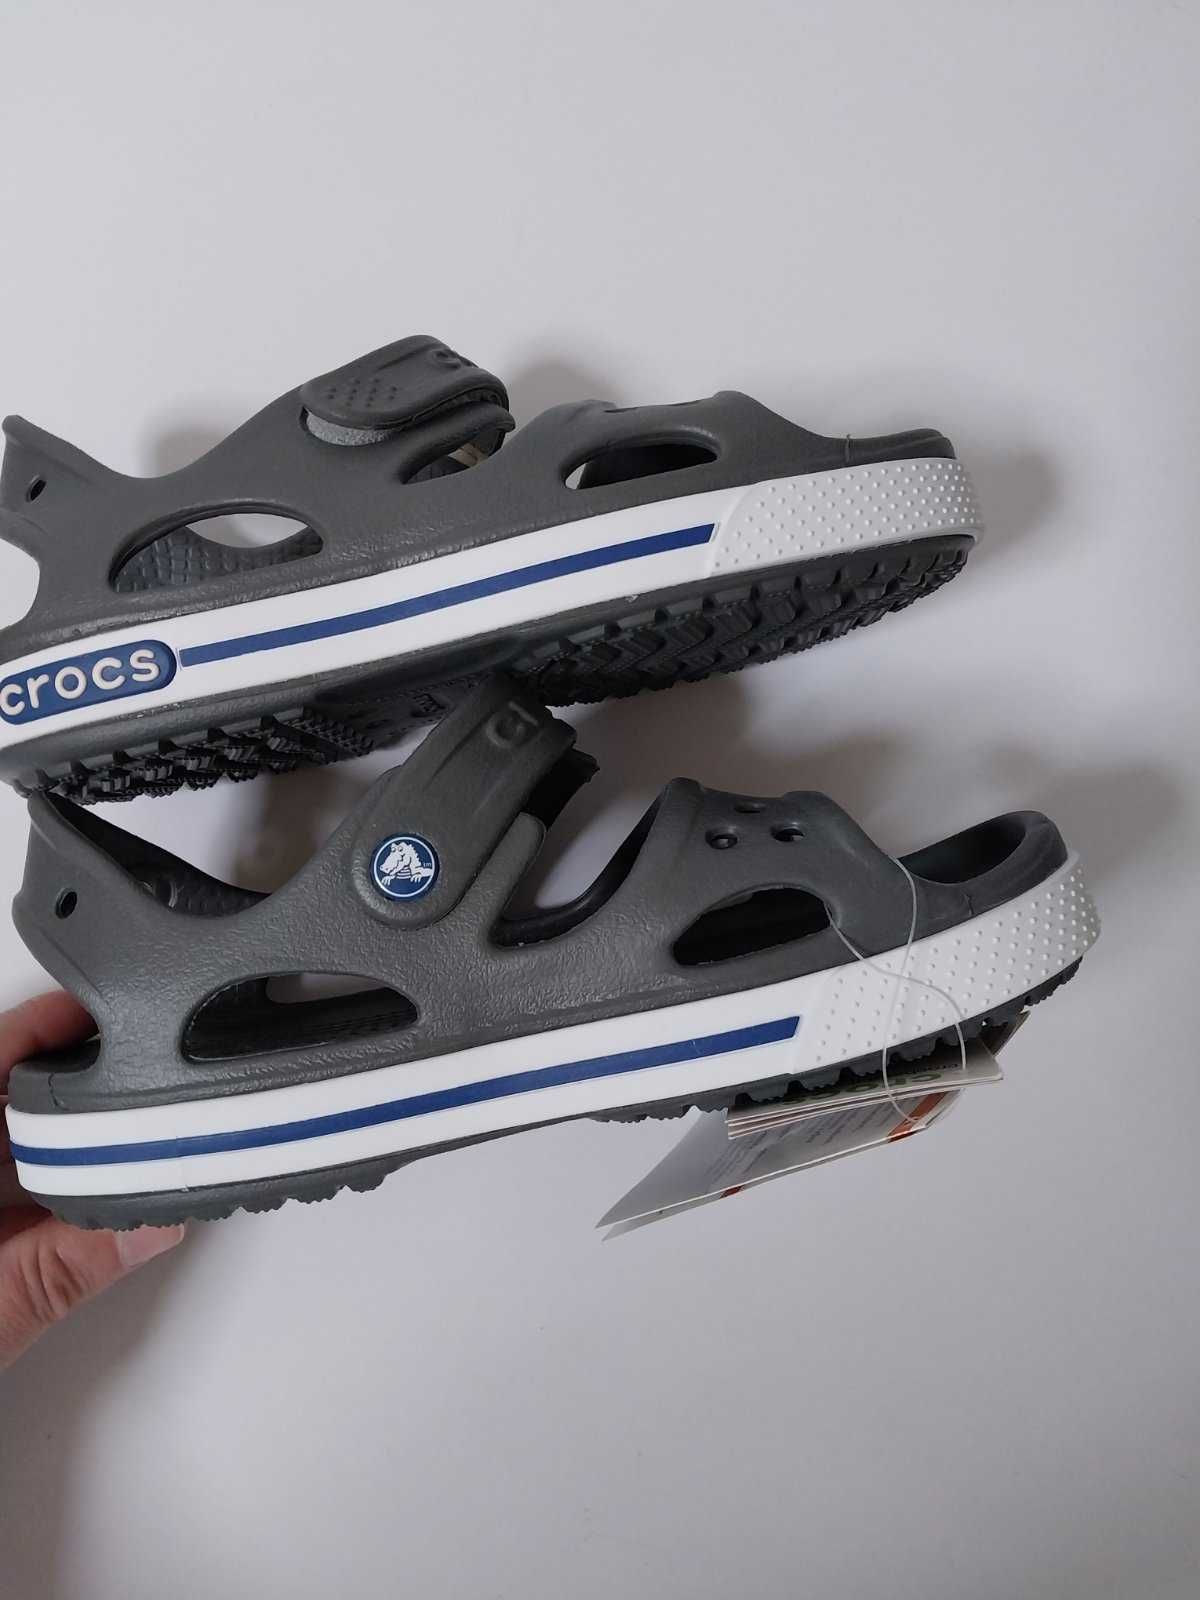 Сандалі Crocs Crocsband II sandal J1 (32-33 євро) босоніжки, сандалии